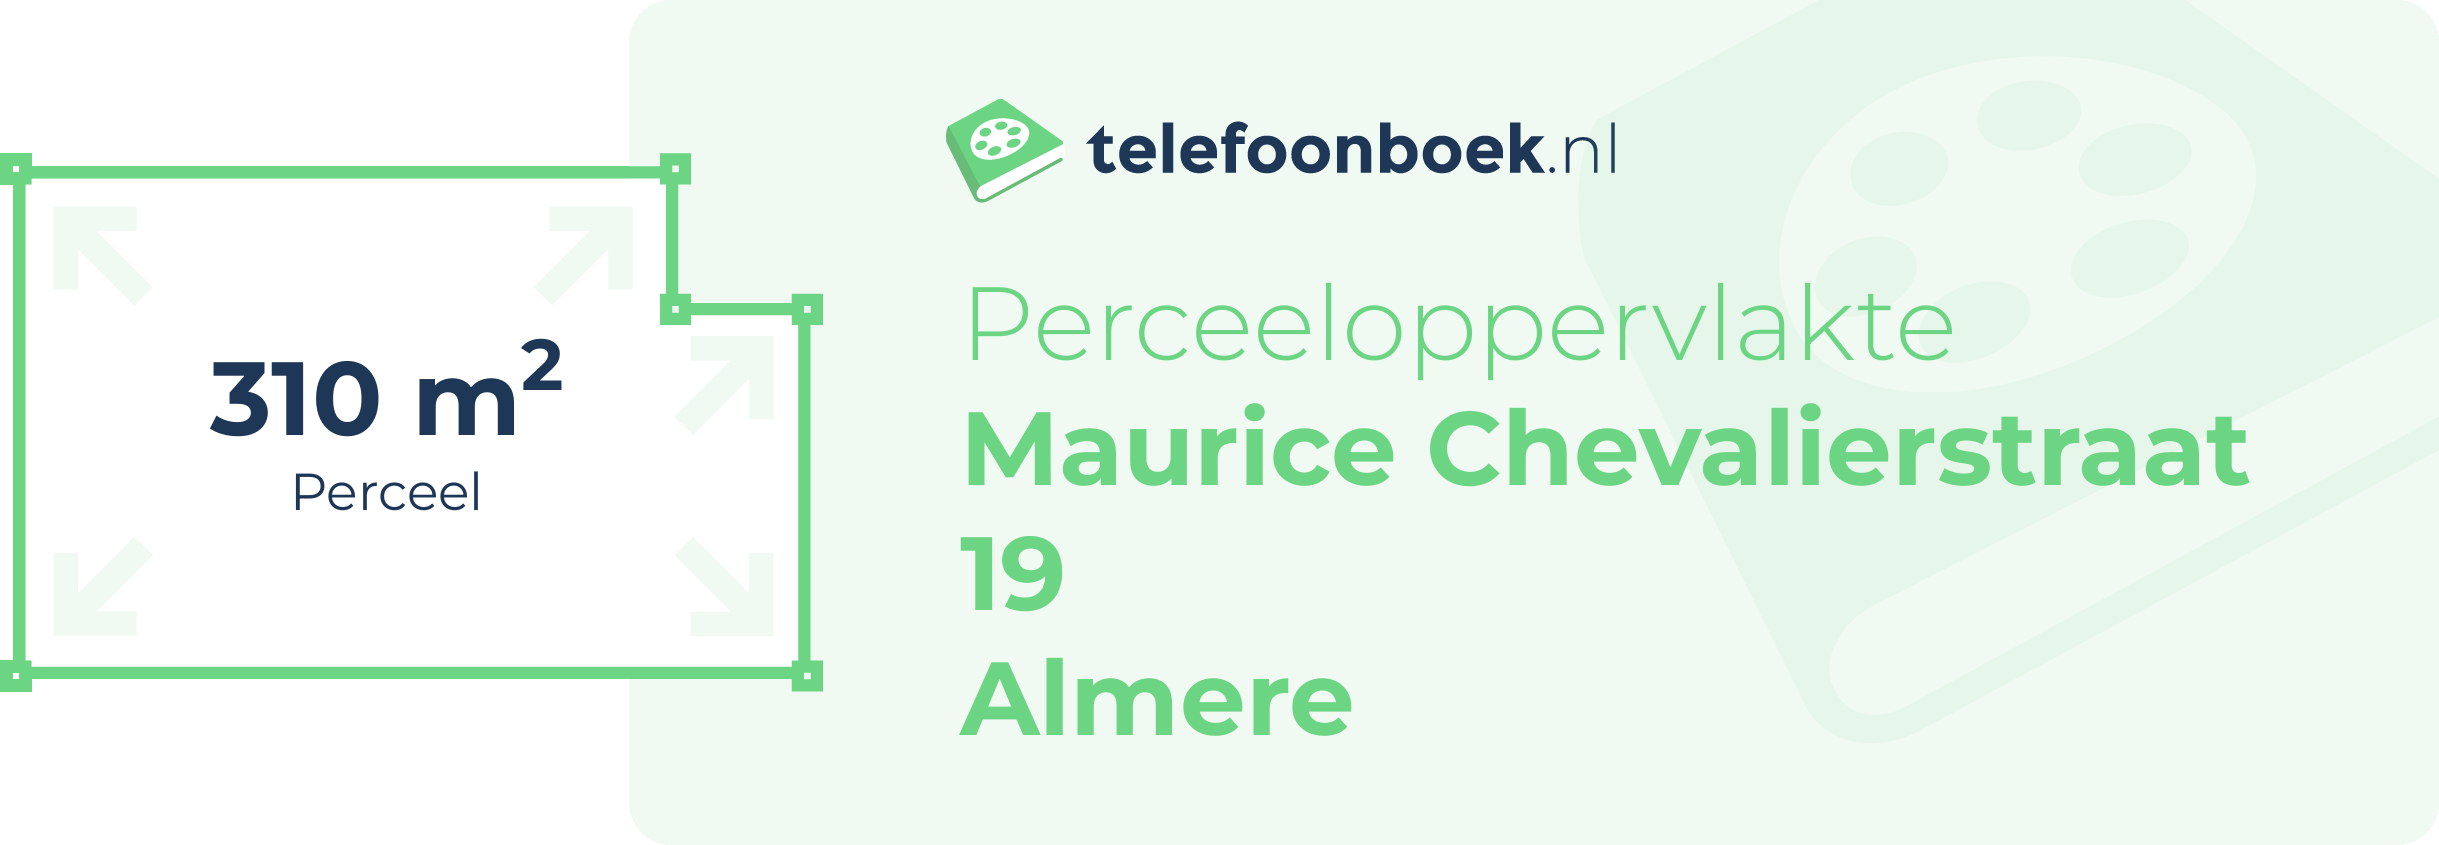 Perceeloppervlakte Maurice Chevalierstraat 19 Almere